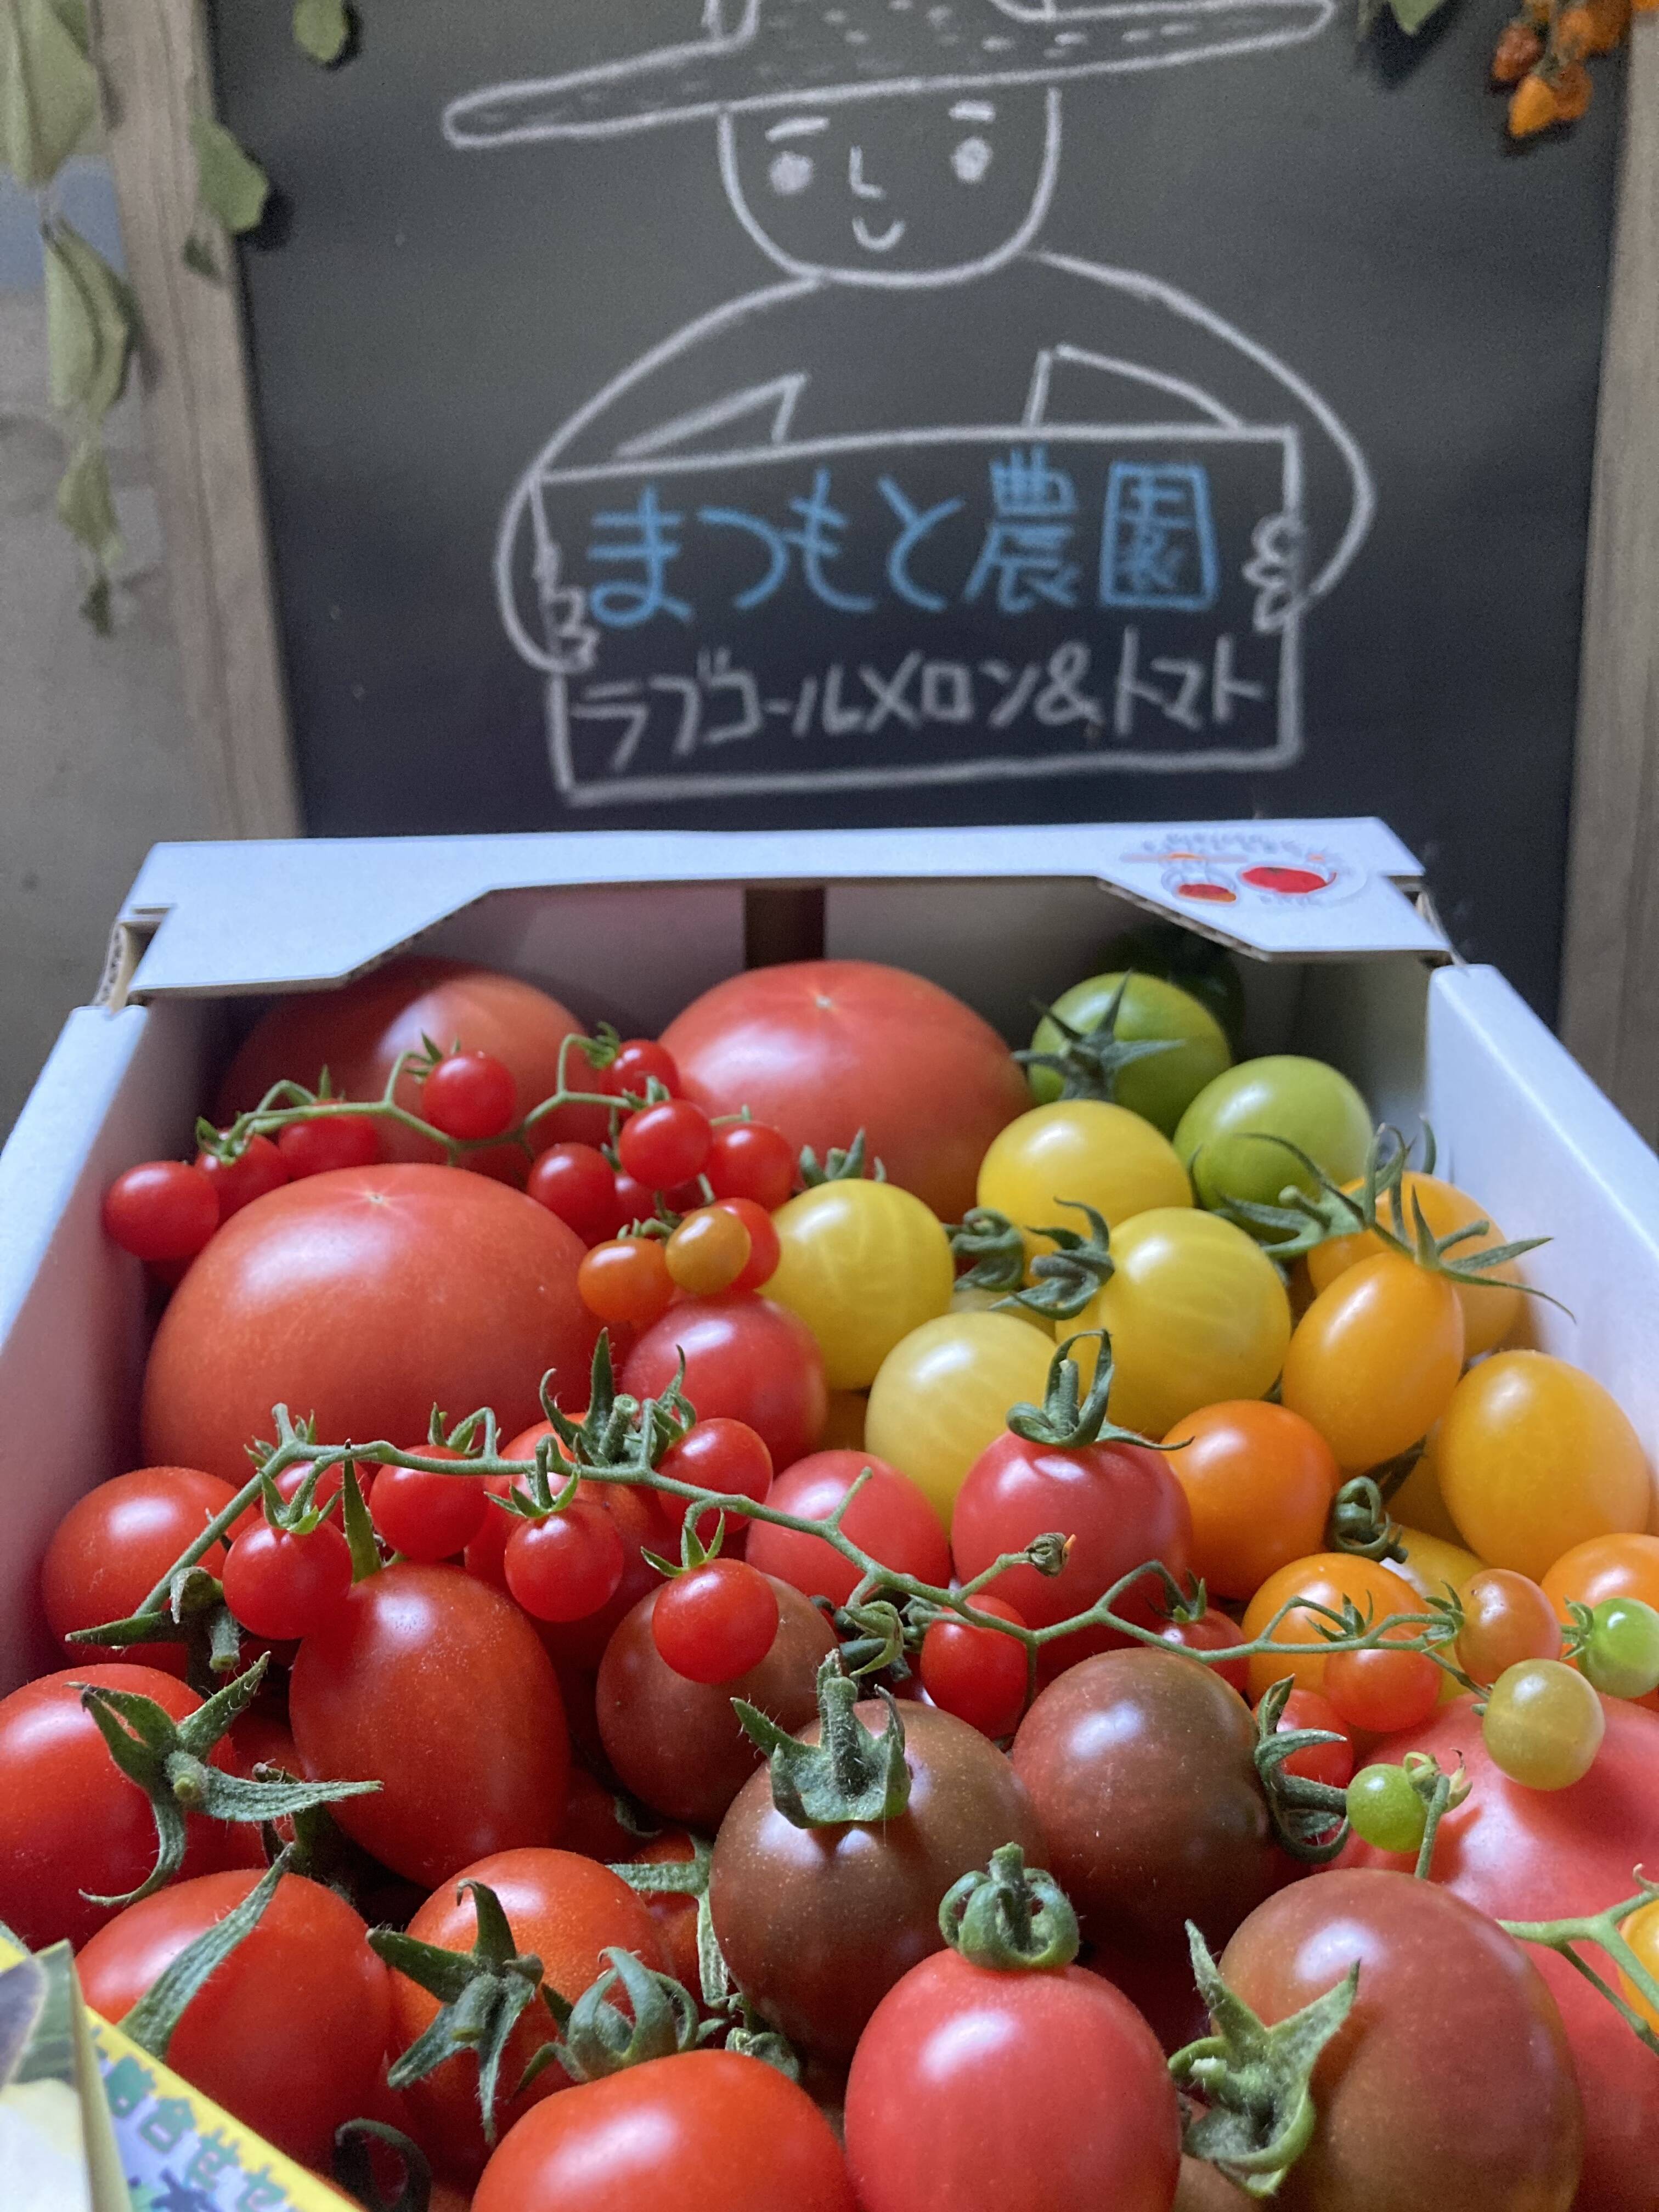 大満足セット トマト ミニトマト カラフルトマトの詰め合わせ7種の1 5キロ 熊本県産の野菜 食べチョク 産地直送 産直 お取り寄せ通販 農家 漁師から旬の食材を直送